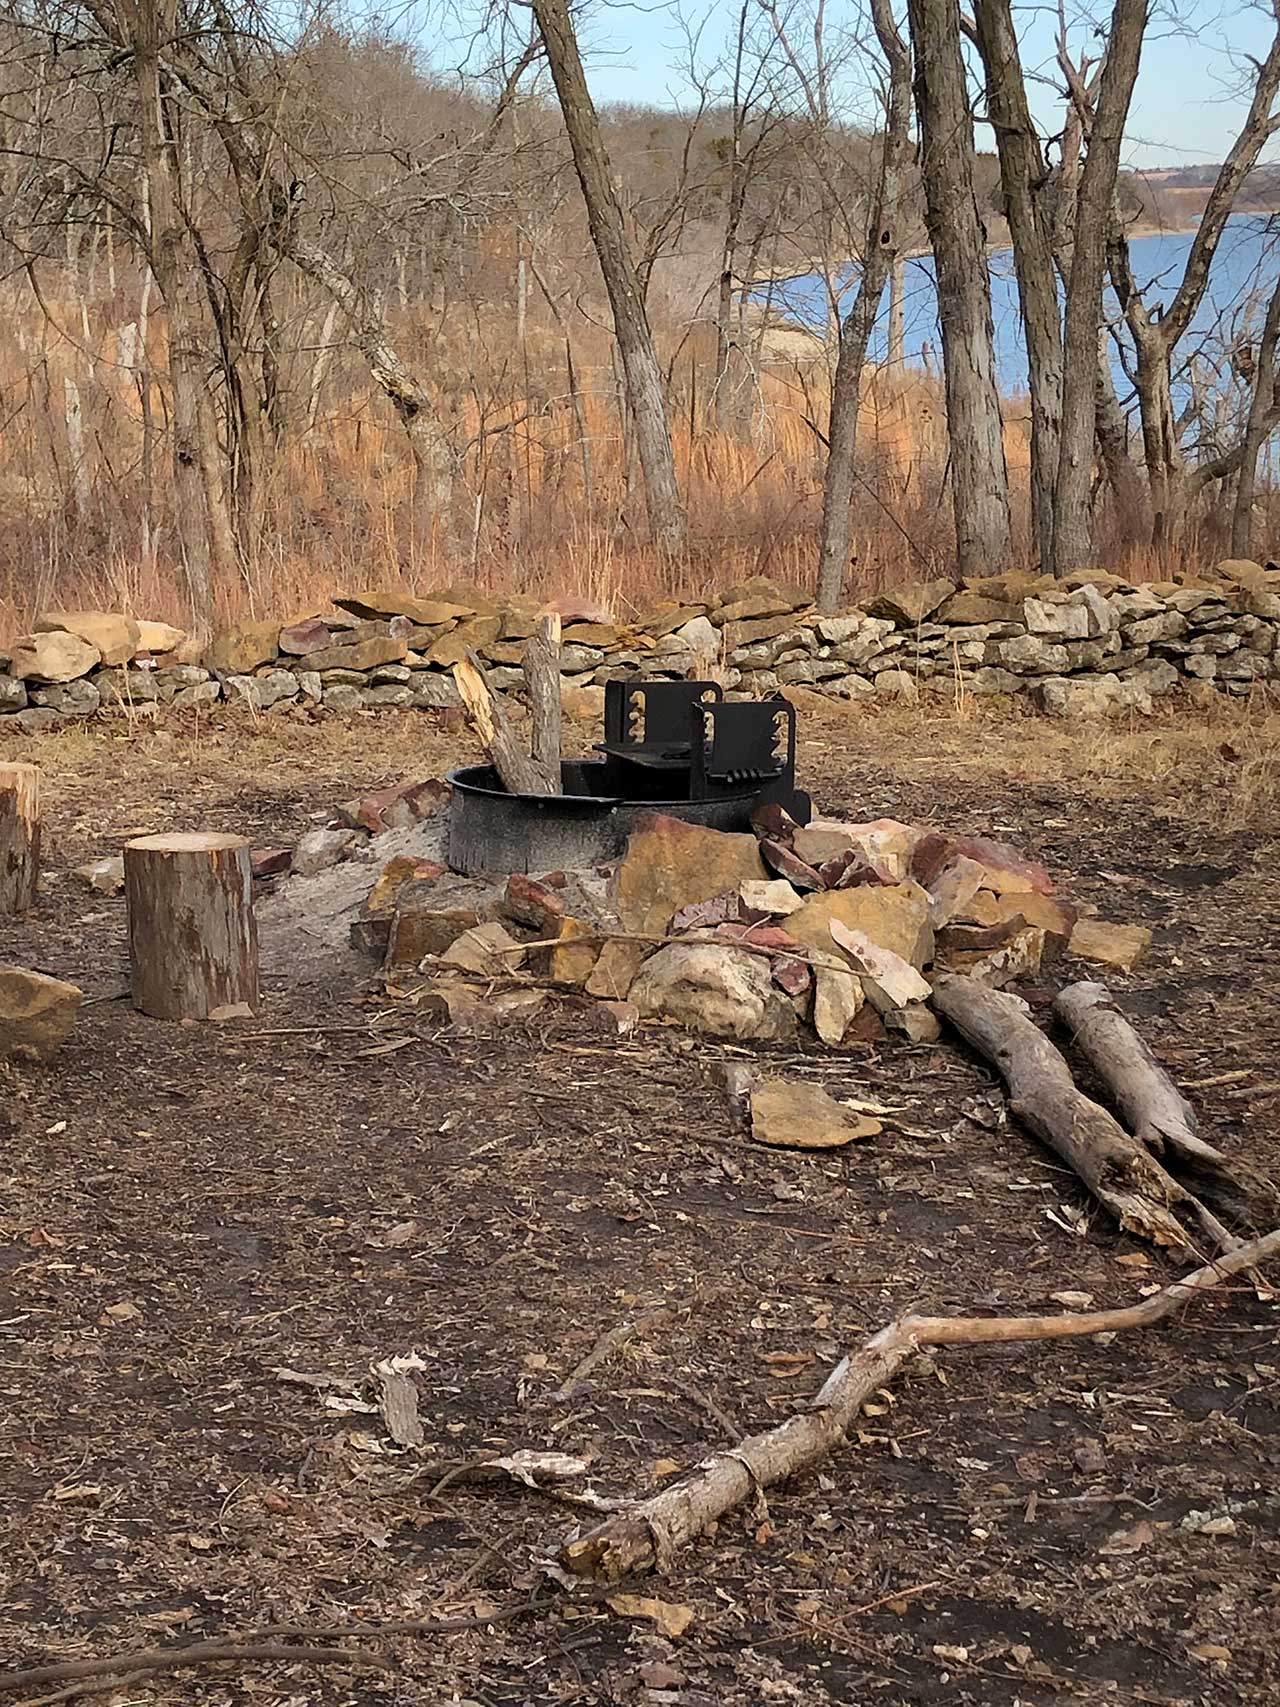 A fire pit at a primitive campsite